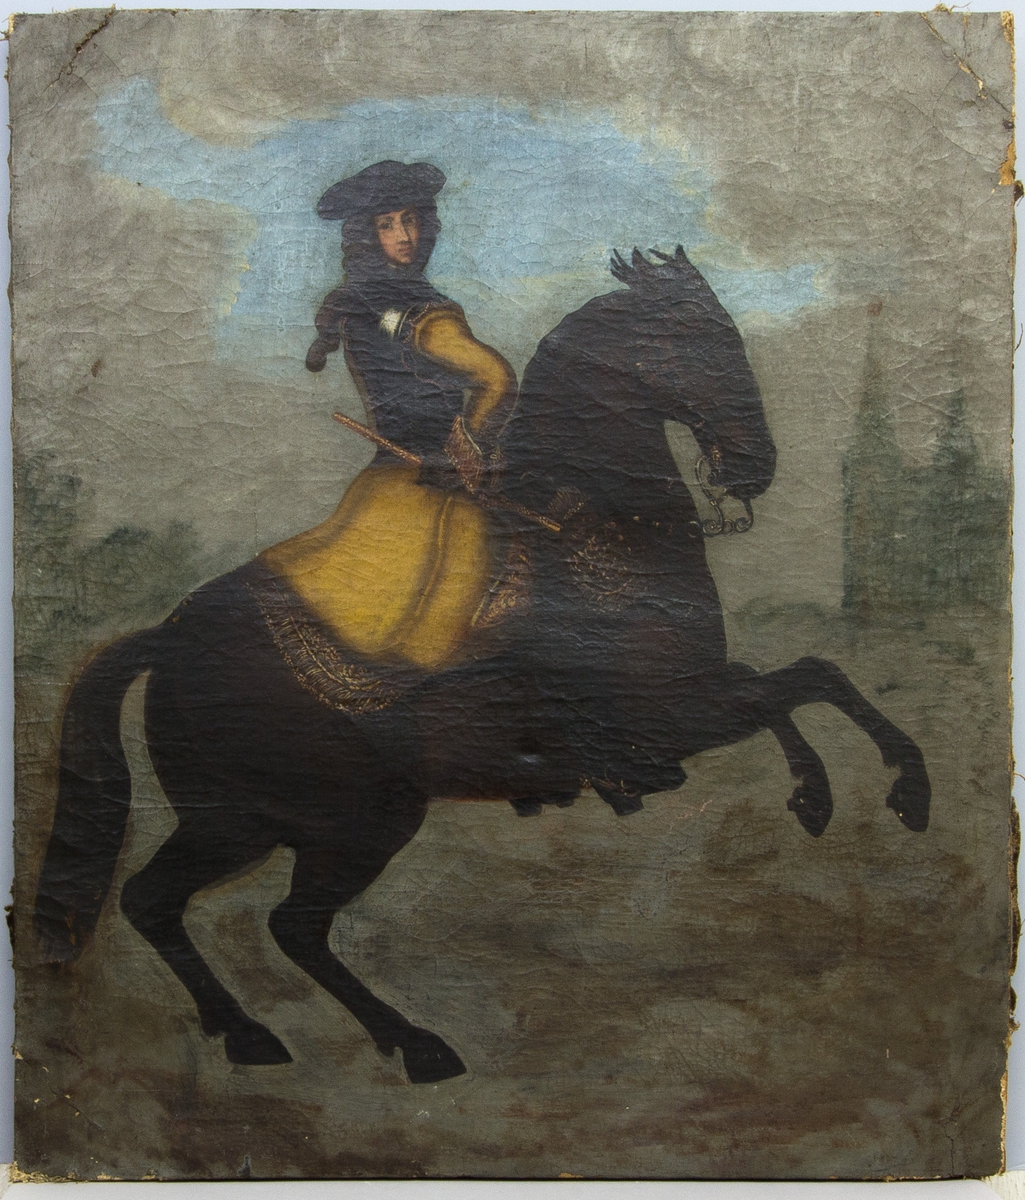 Porträtt av Karl XI till häst med armen i sidan, iklädd lång gul rock. Kyrka eller slottsbyggnad i bakgrunden.